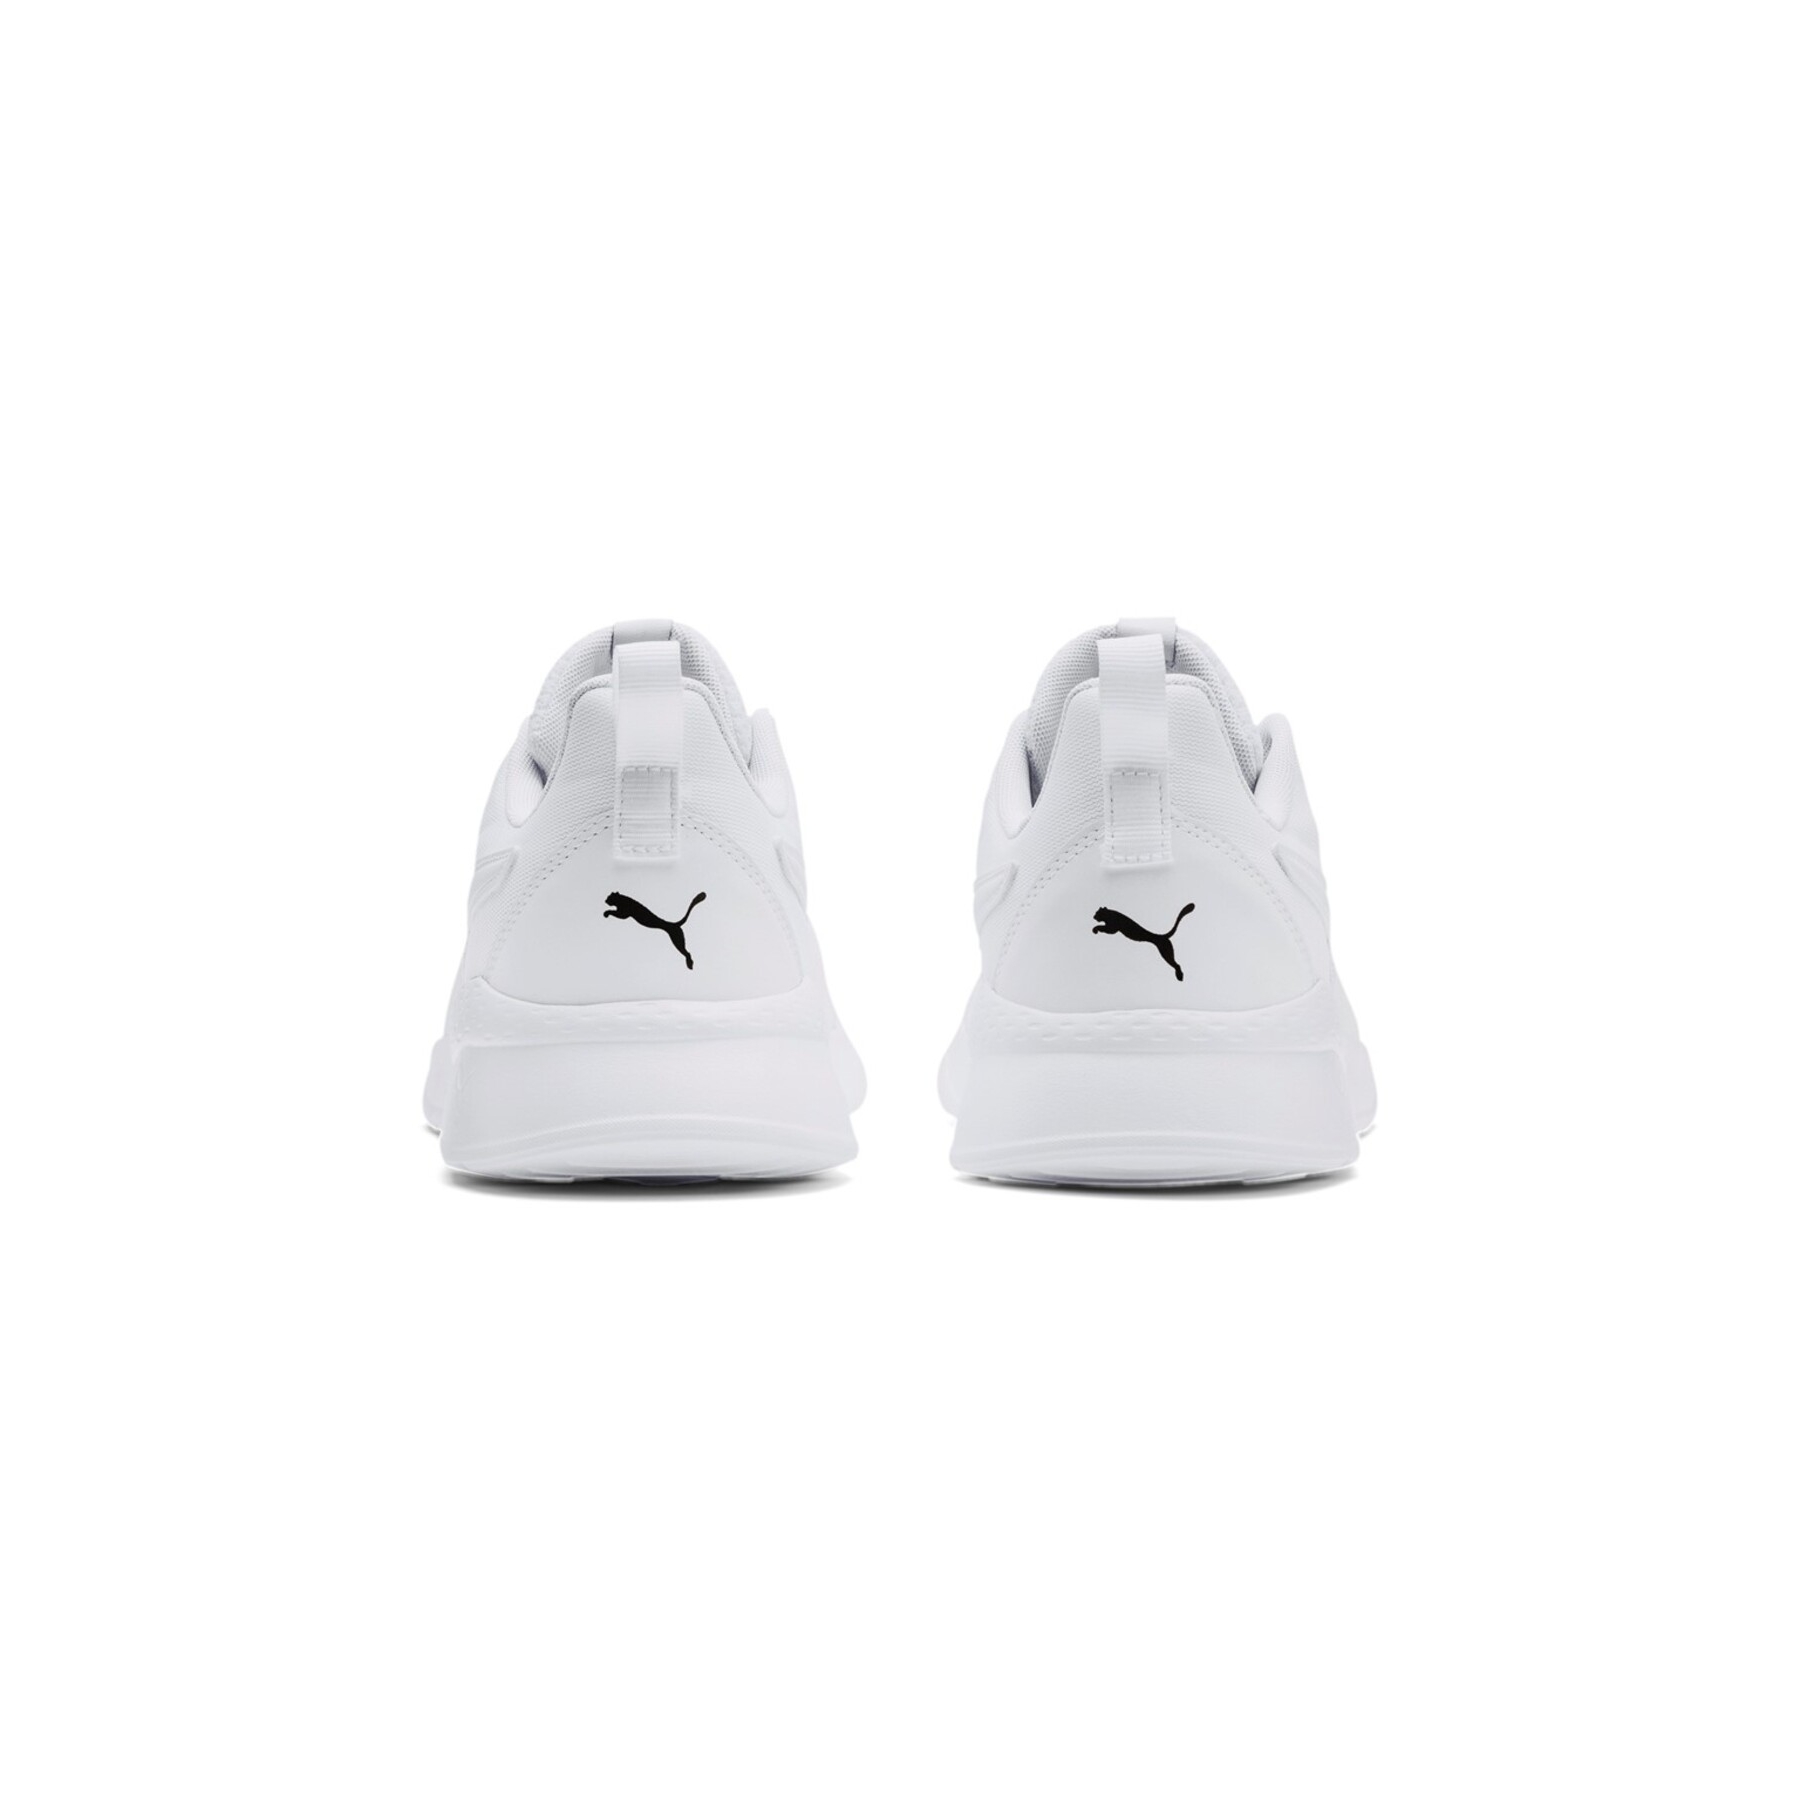 Puma Anzarun Lite Beyaz Spor Ayakkabı (371128-03)